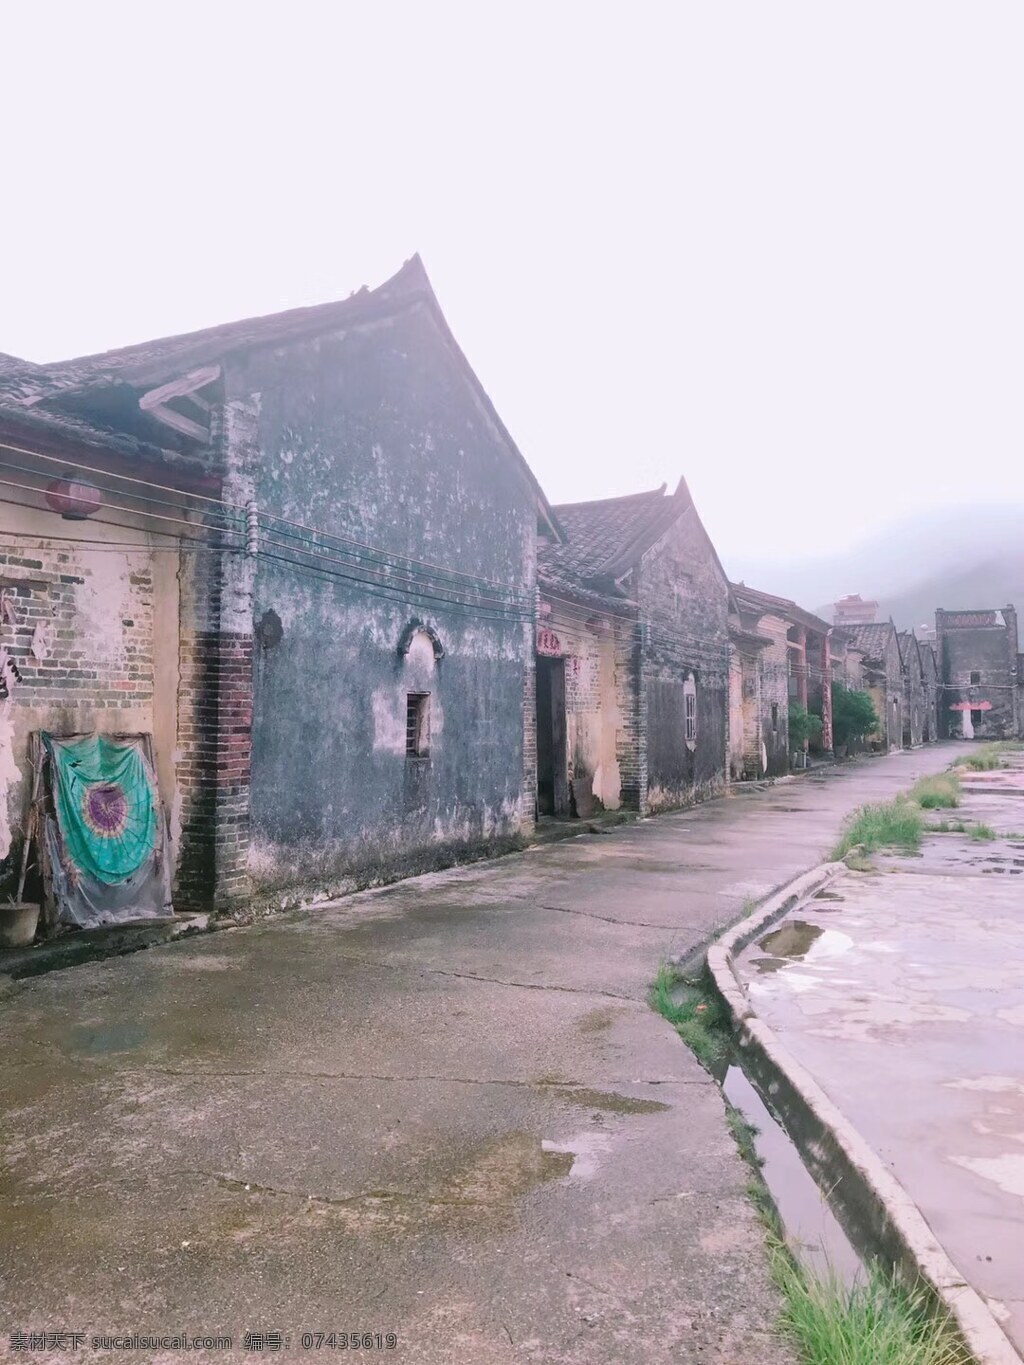 老屋瓦房 古村 老屋 瓦房 古建筑 古文化 历史 广东 旅游摄影